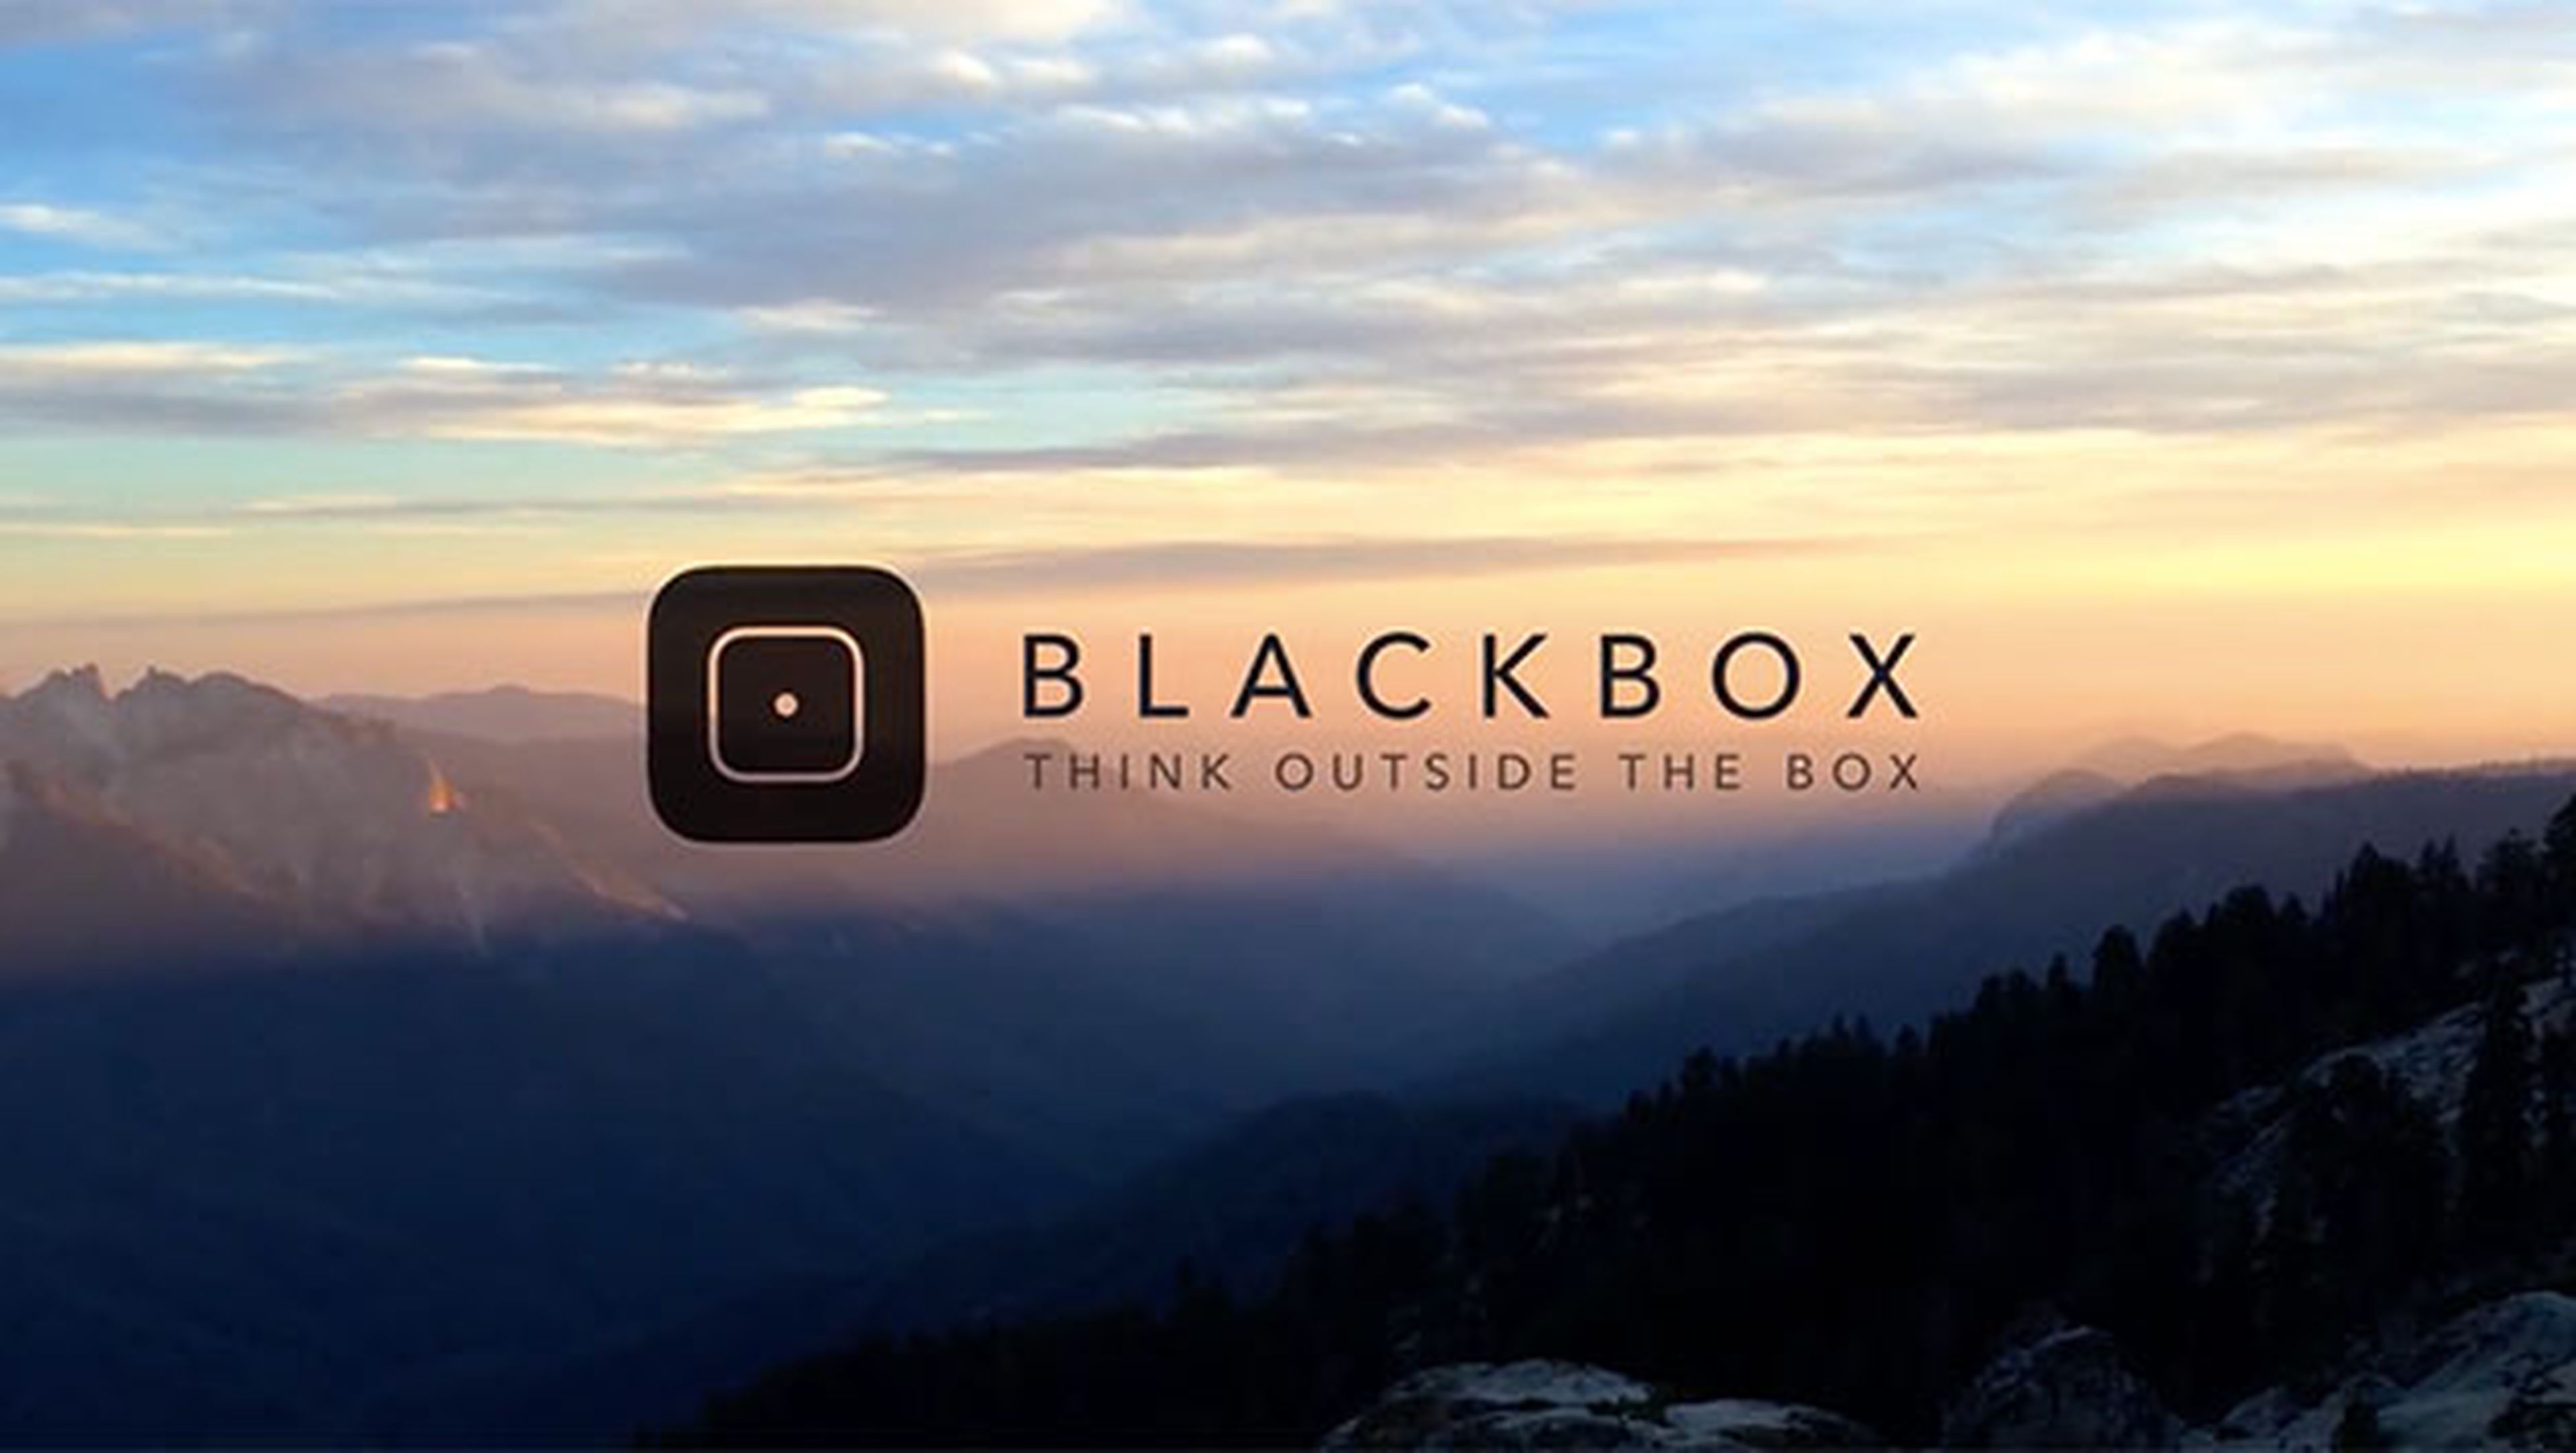 Blackbox - Piensa fuera de la caja